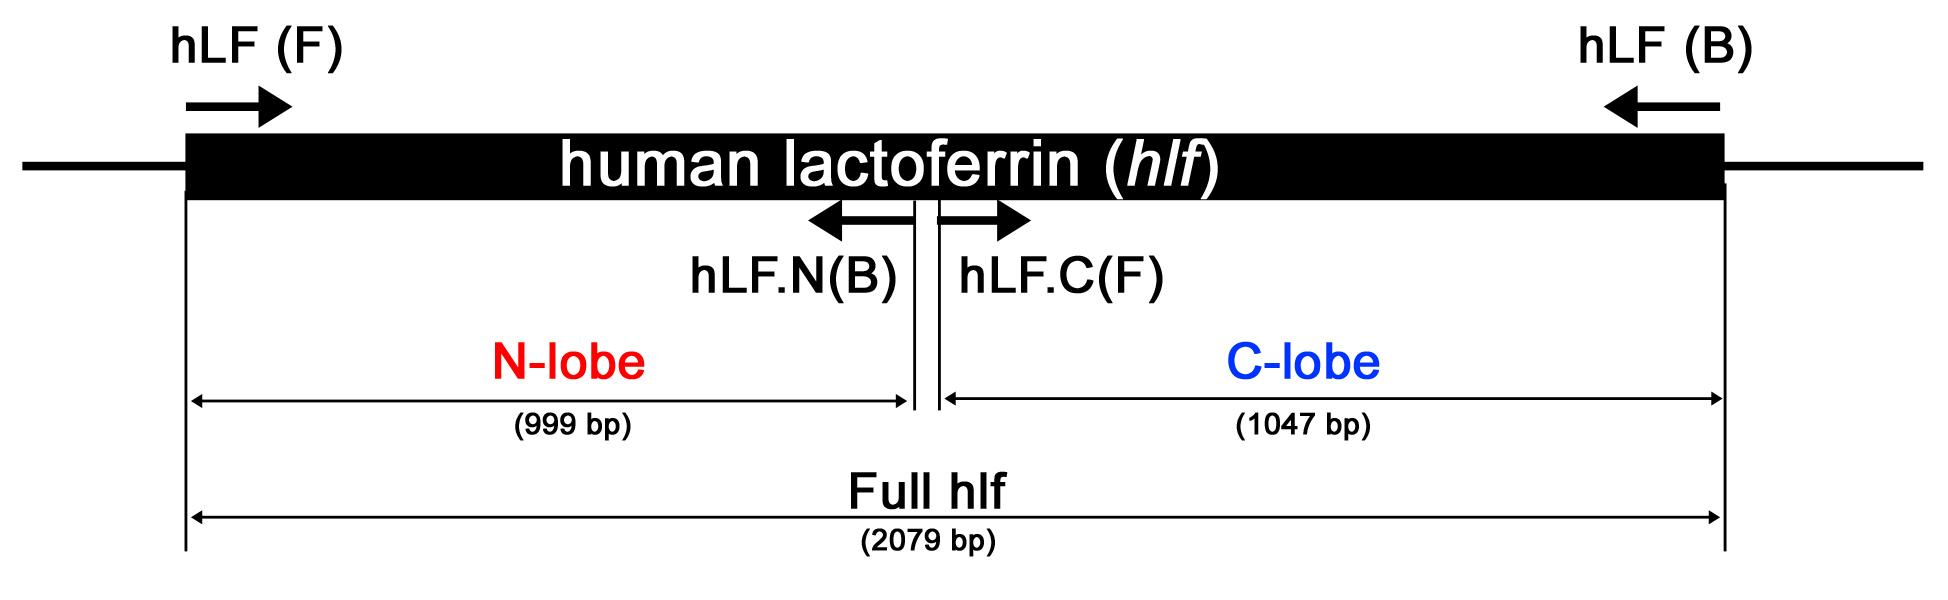 사람 락토페린 full length, 락토페린 N-lobe 그리고 락토페린 C-lobe 부분의 모식도